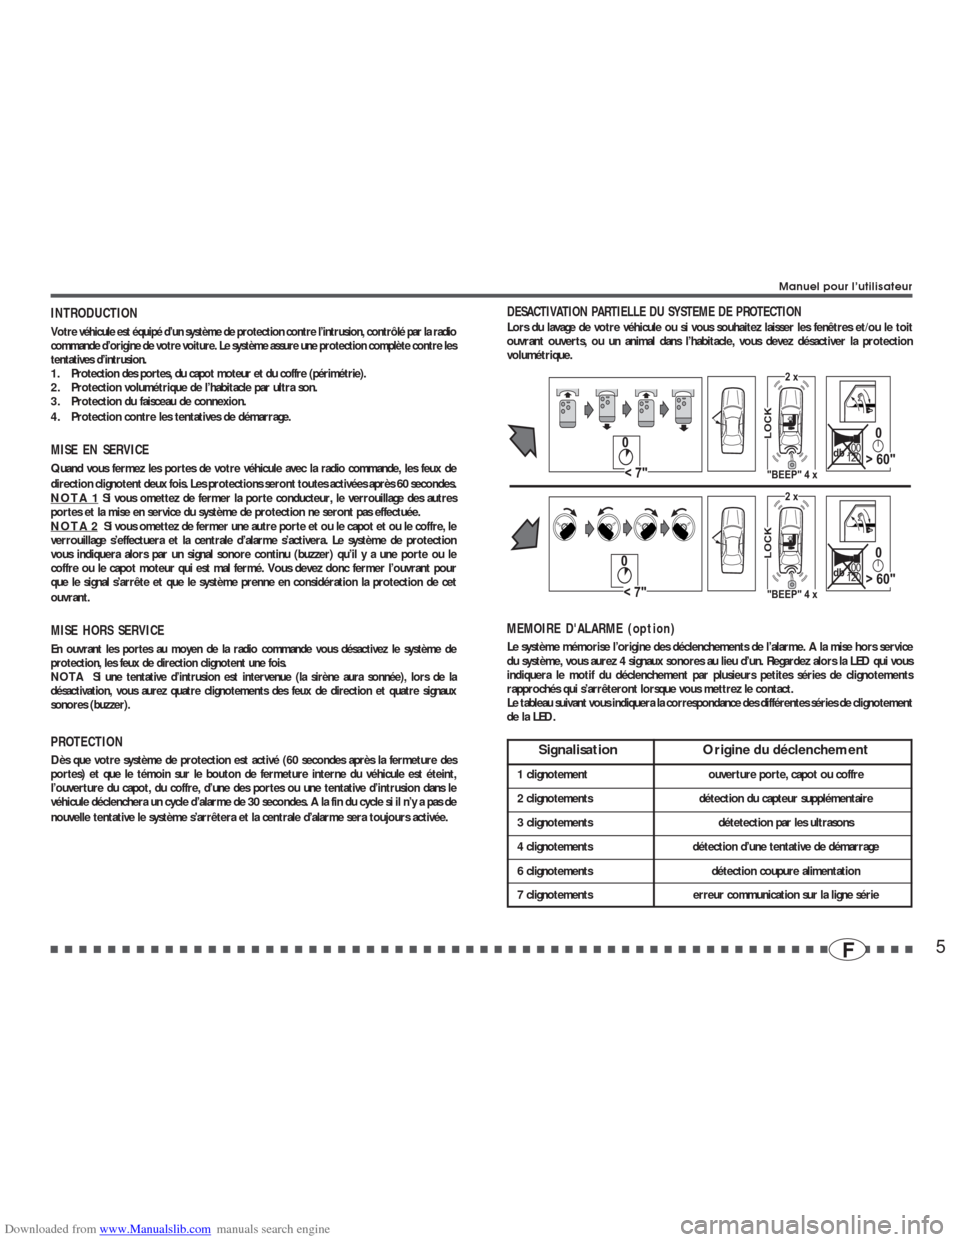 RENAULT ESPACE 2002 J66 / 3.G Alarm 7895-7897 User Manual Downloaded from www.Manualslib.com manuals search engine 5F
INTRODUCTIONVotre véhicule est équipé d’un système de protection contre l’intrusion, contrôlé par la radio
commande d’origine de